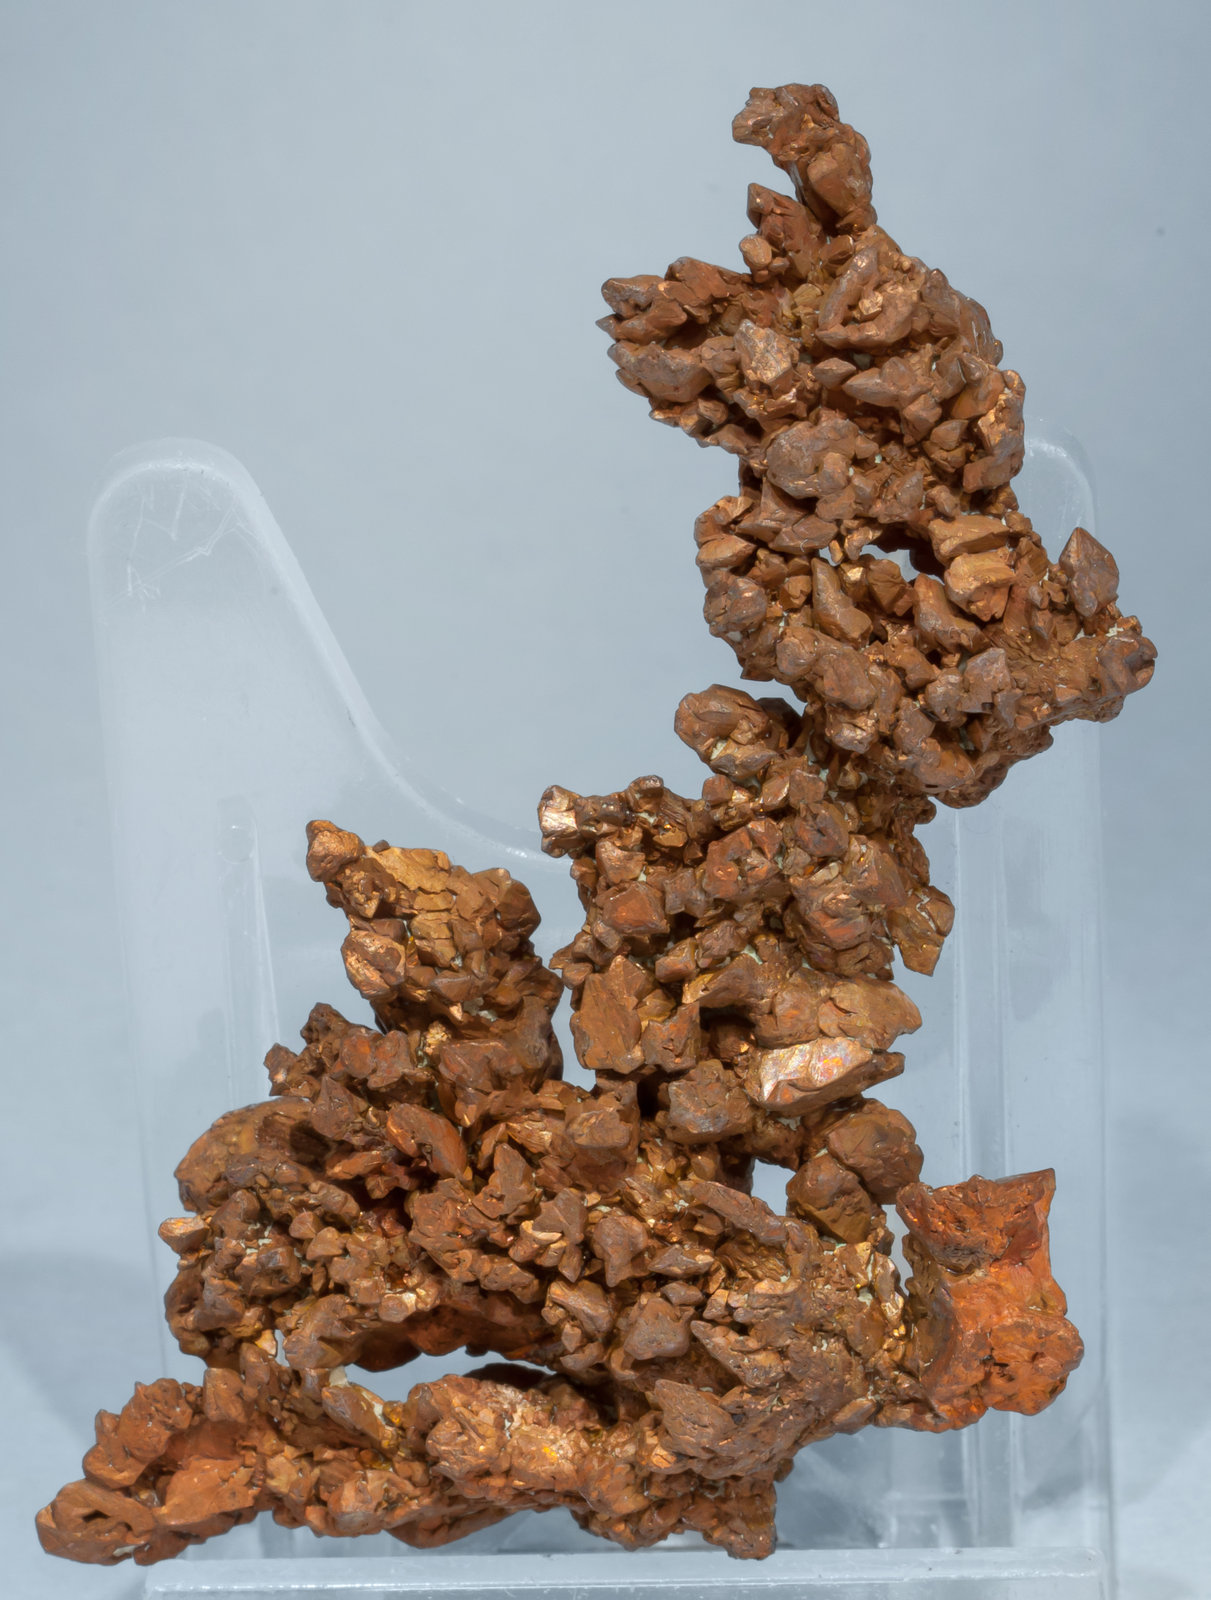 specimens/s_imagesAE8/Copper-TH96AE8r.jpg